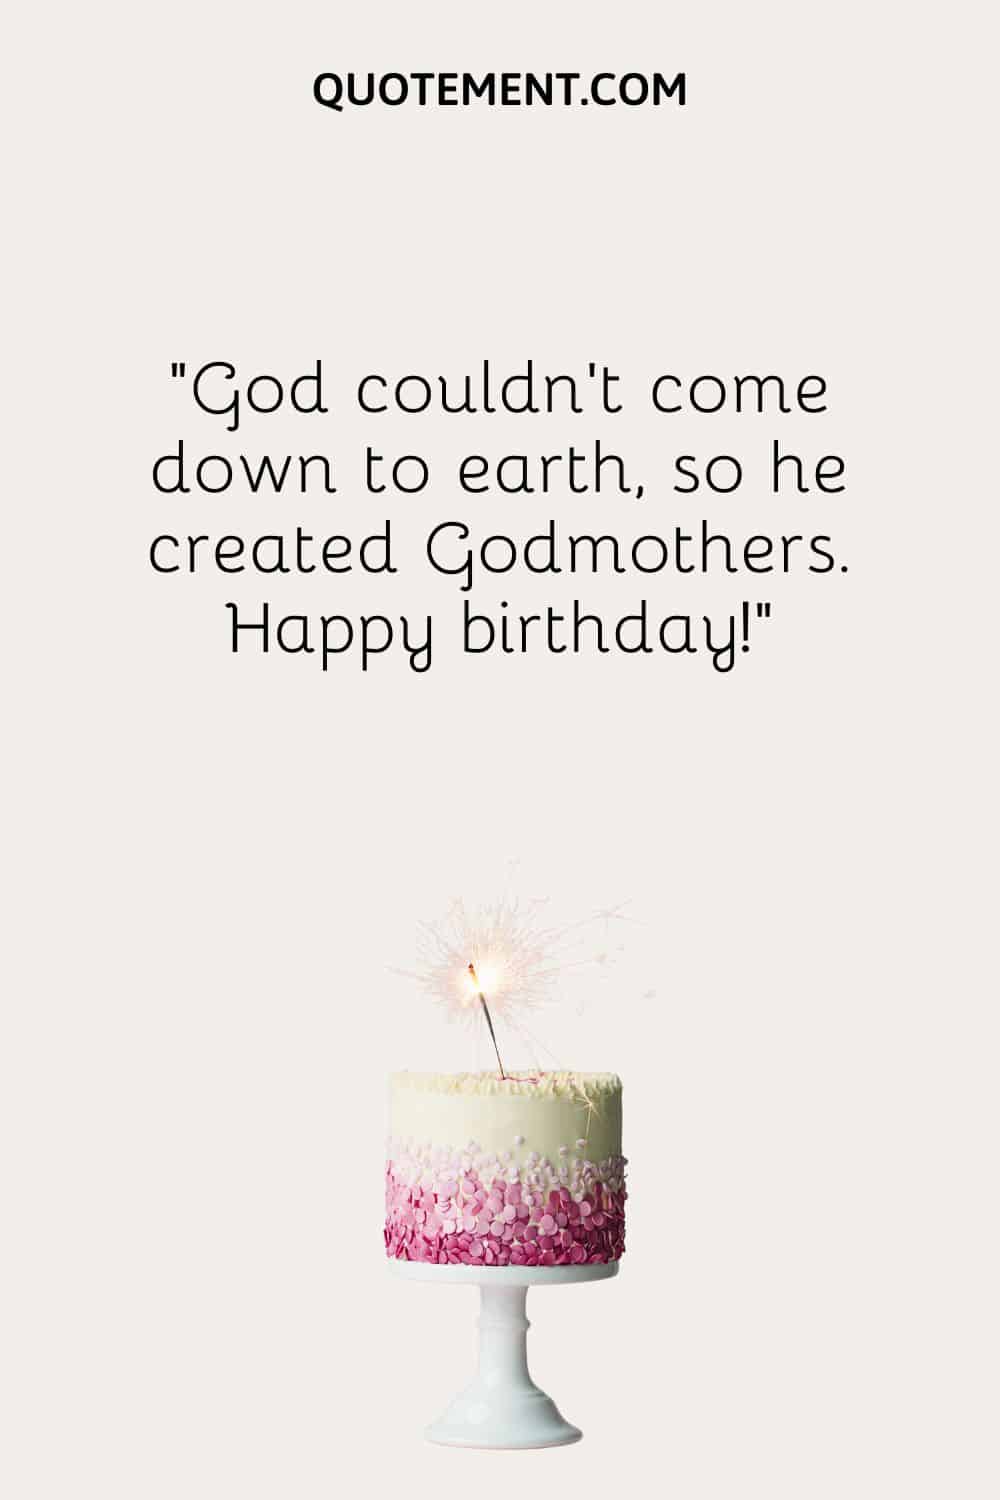 birthday cake illustration representing happy birthday godmother wish